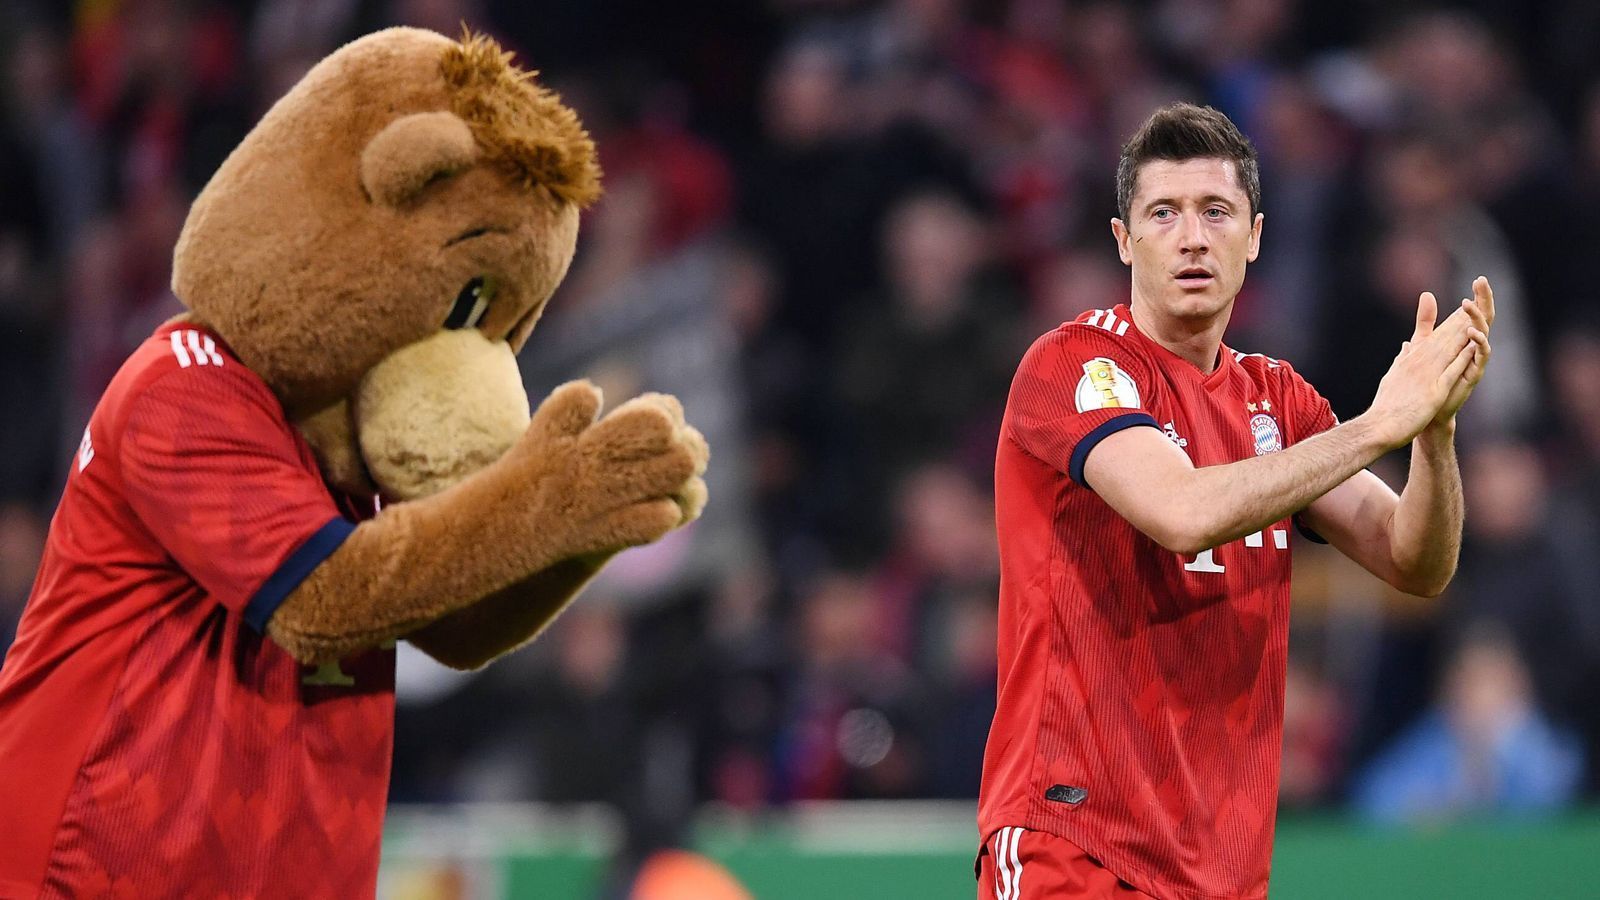 
                <strong>FC Bayern München: Die Maskottchen im Wandel der Zeit</strong><br>
                Berni hat die größten Stars Kommen und Gehen sehen. Hier verneigt er sich vor Robert Lewandowski. Oder ist Berni der eigentliche Star?
              